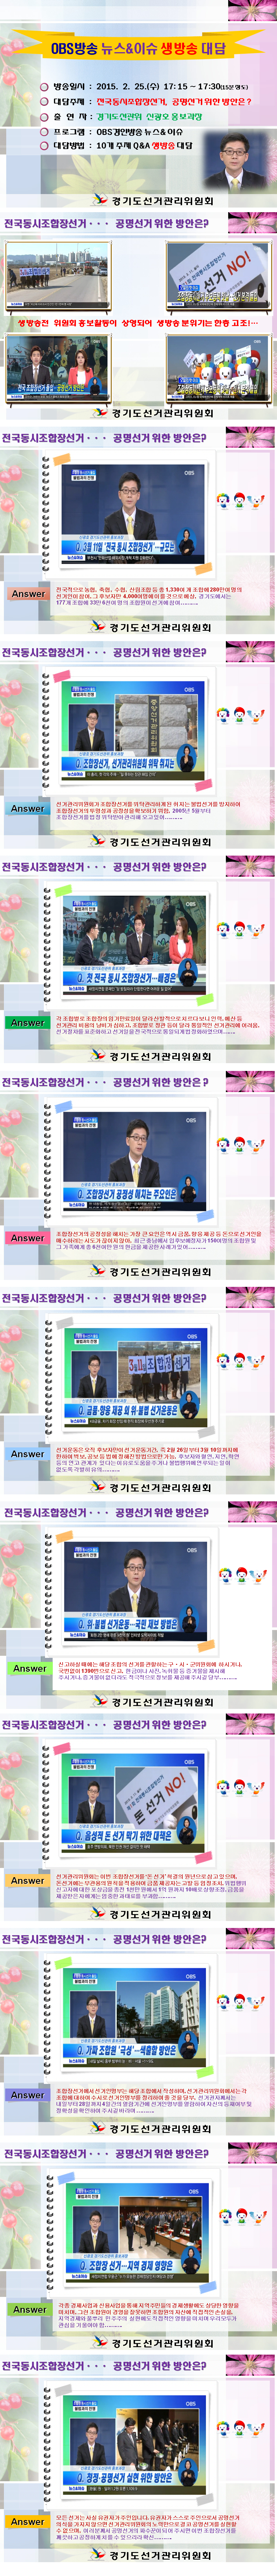 경기도선관위 신광호 홍보과장님은 OBS방송 뉴스&이슈 생방송 대담을 실시하였습니다.